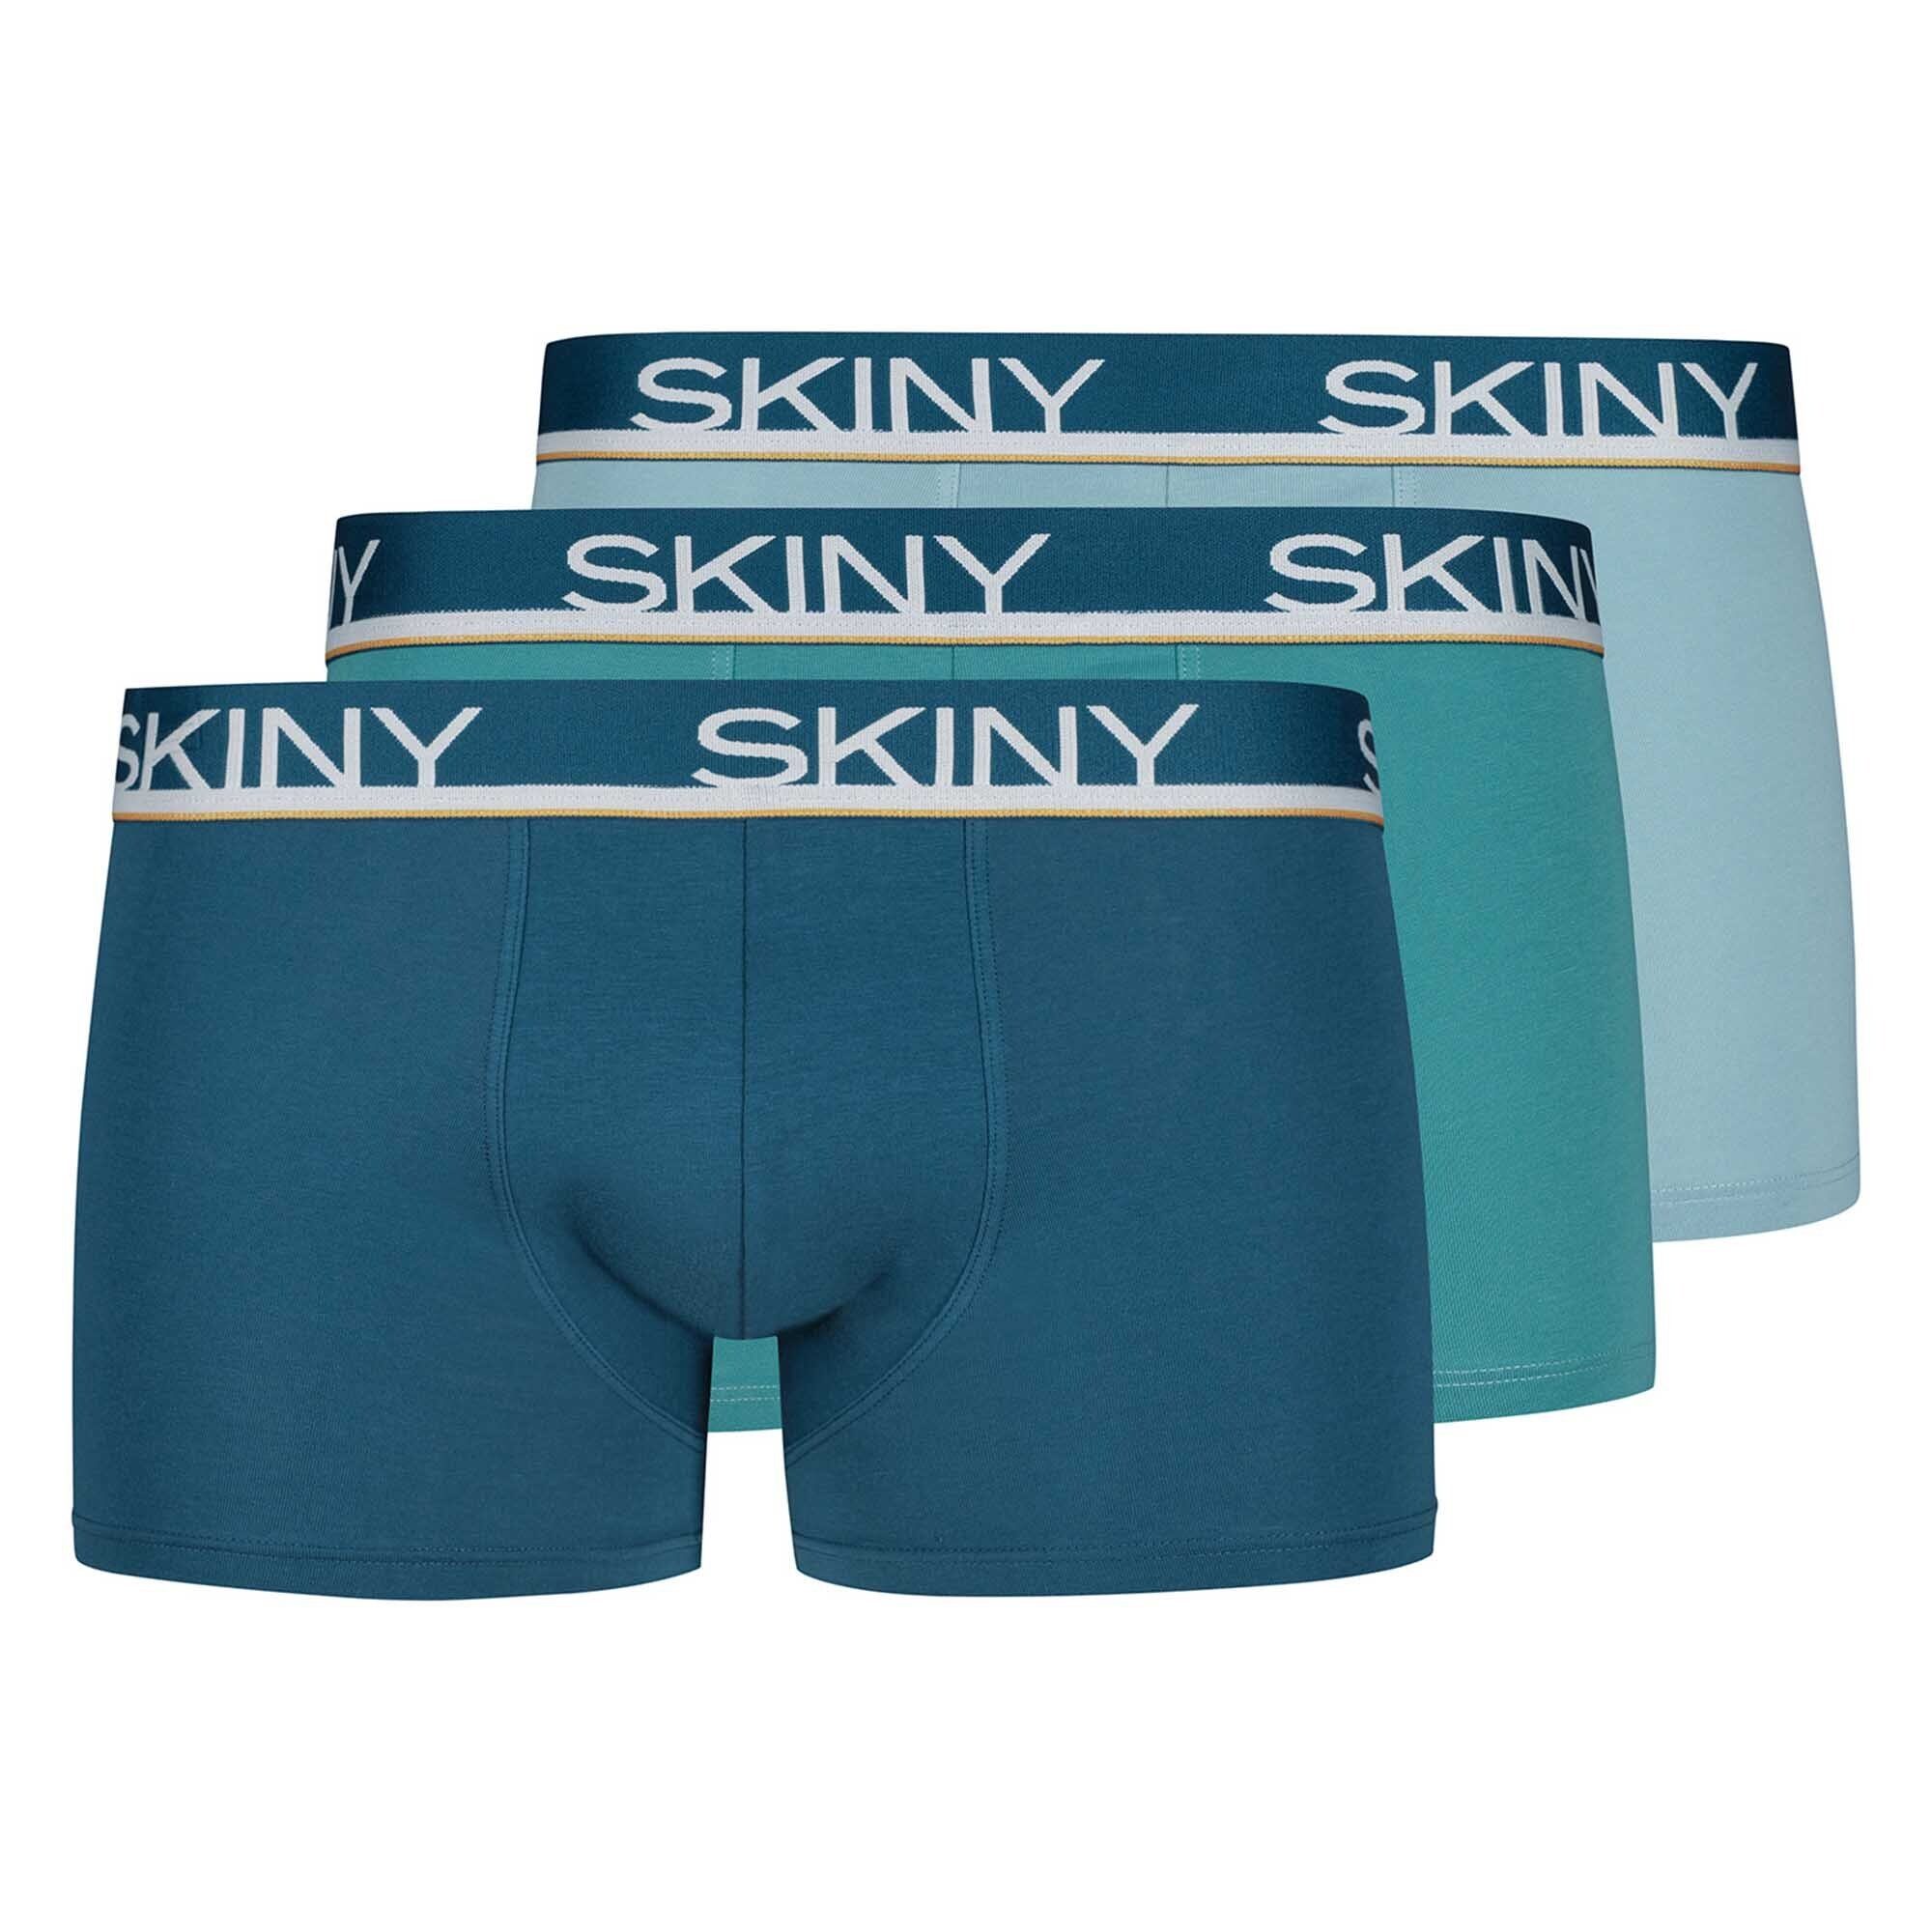 - Pants Herren Pack Boxer Blau/Türkis/Hellblau 3er Skiny Shorts Trunks, Boxer